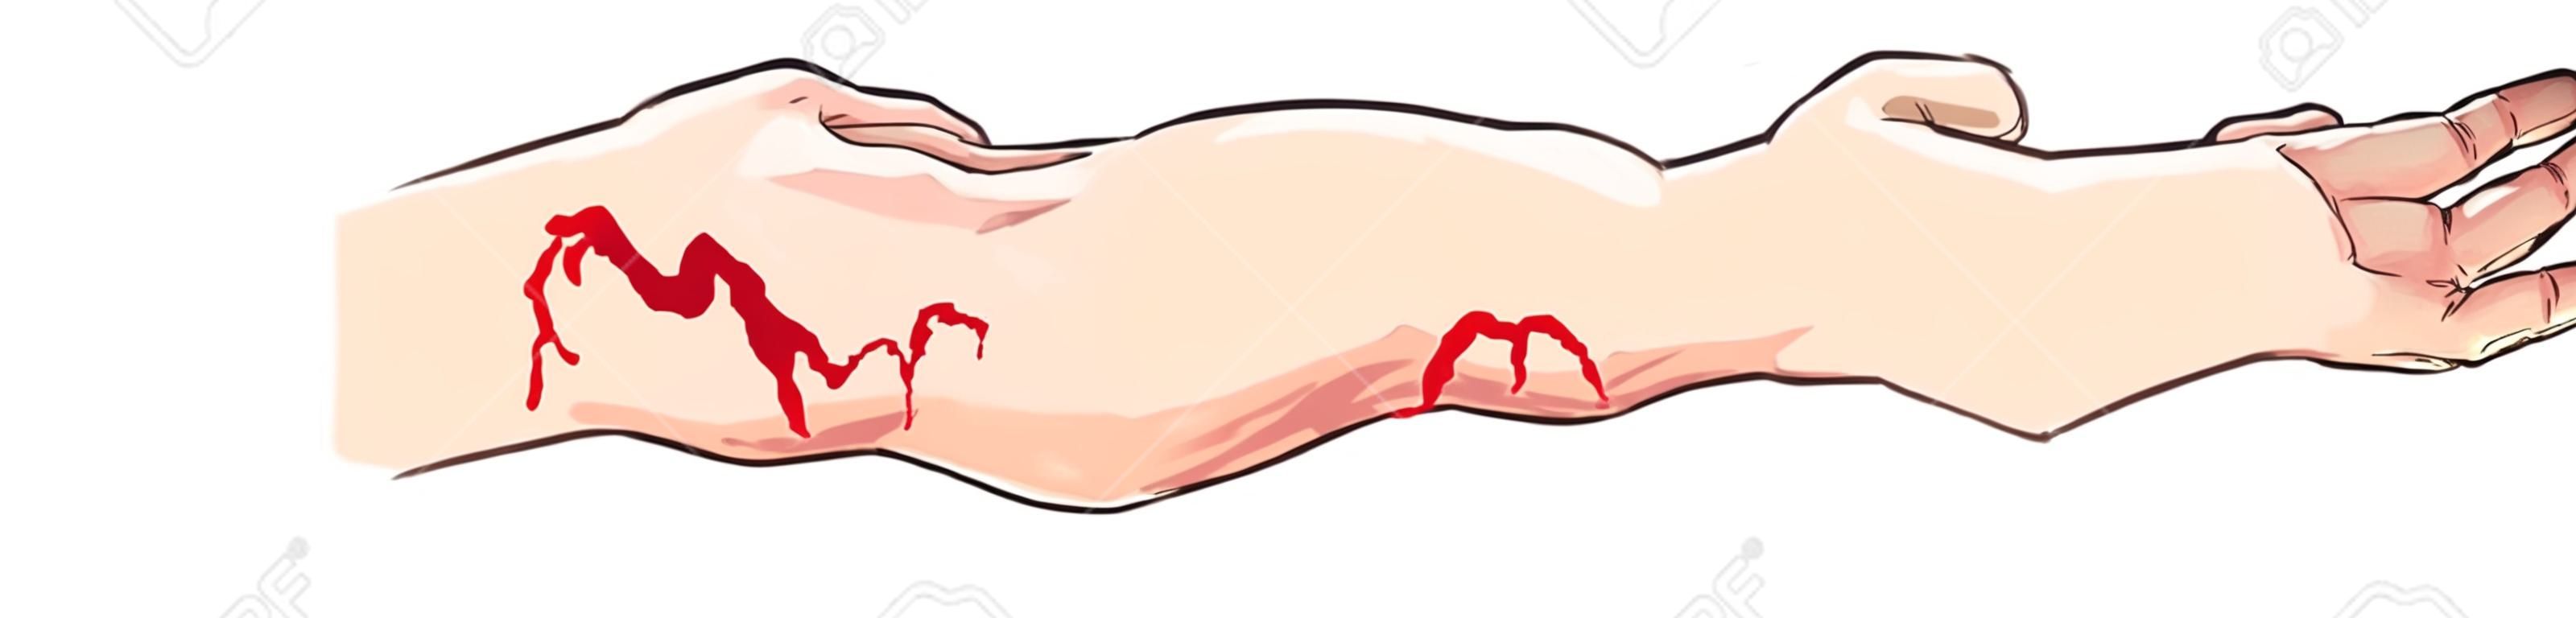 ilustração vetorial de um sangramento arterial e venoso